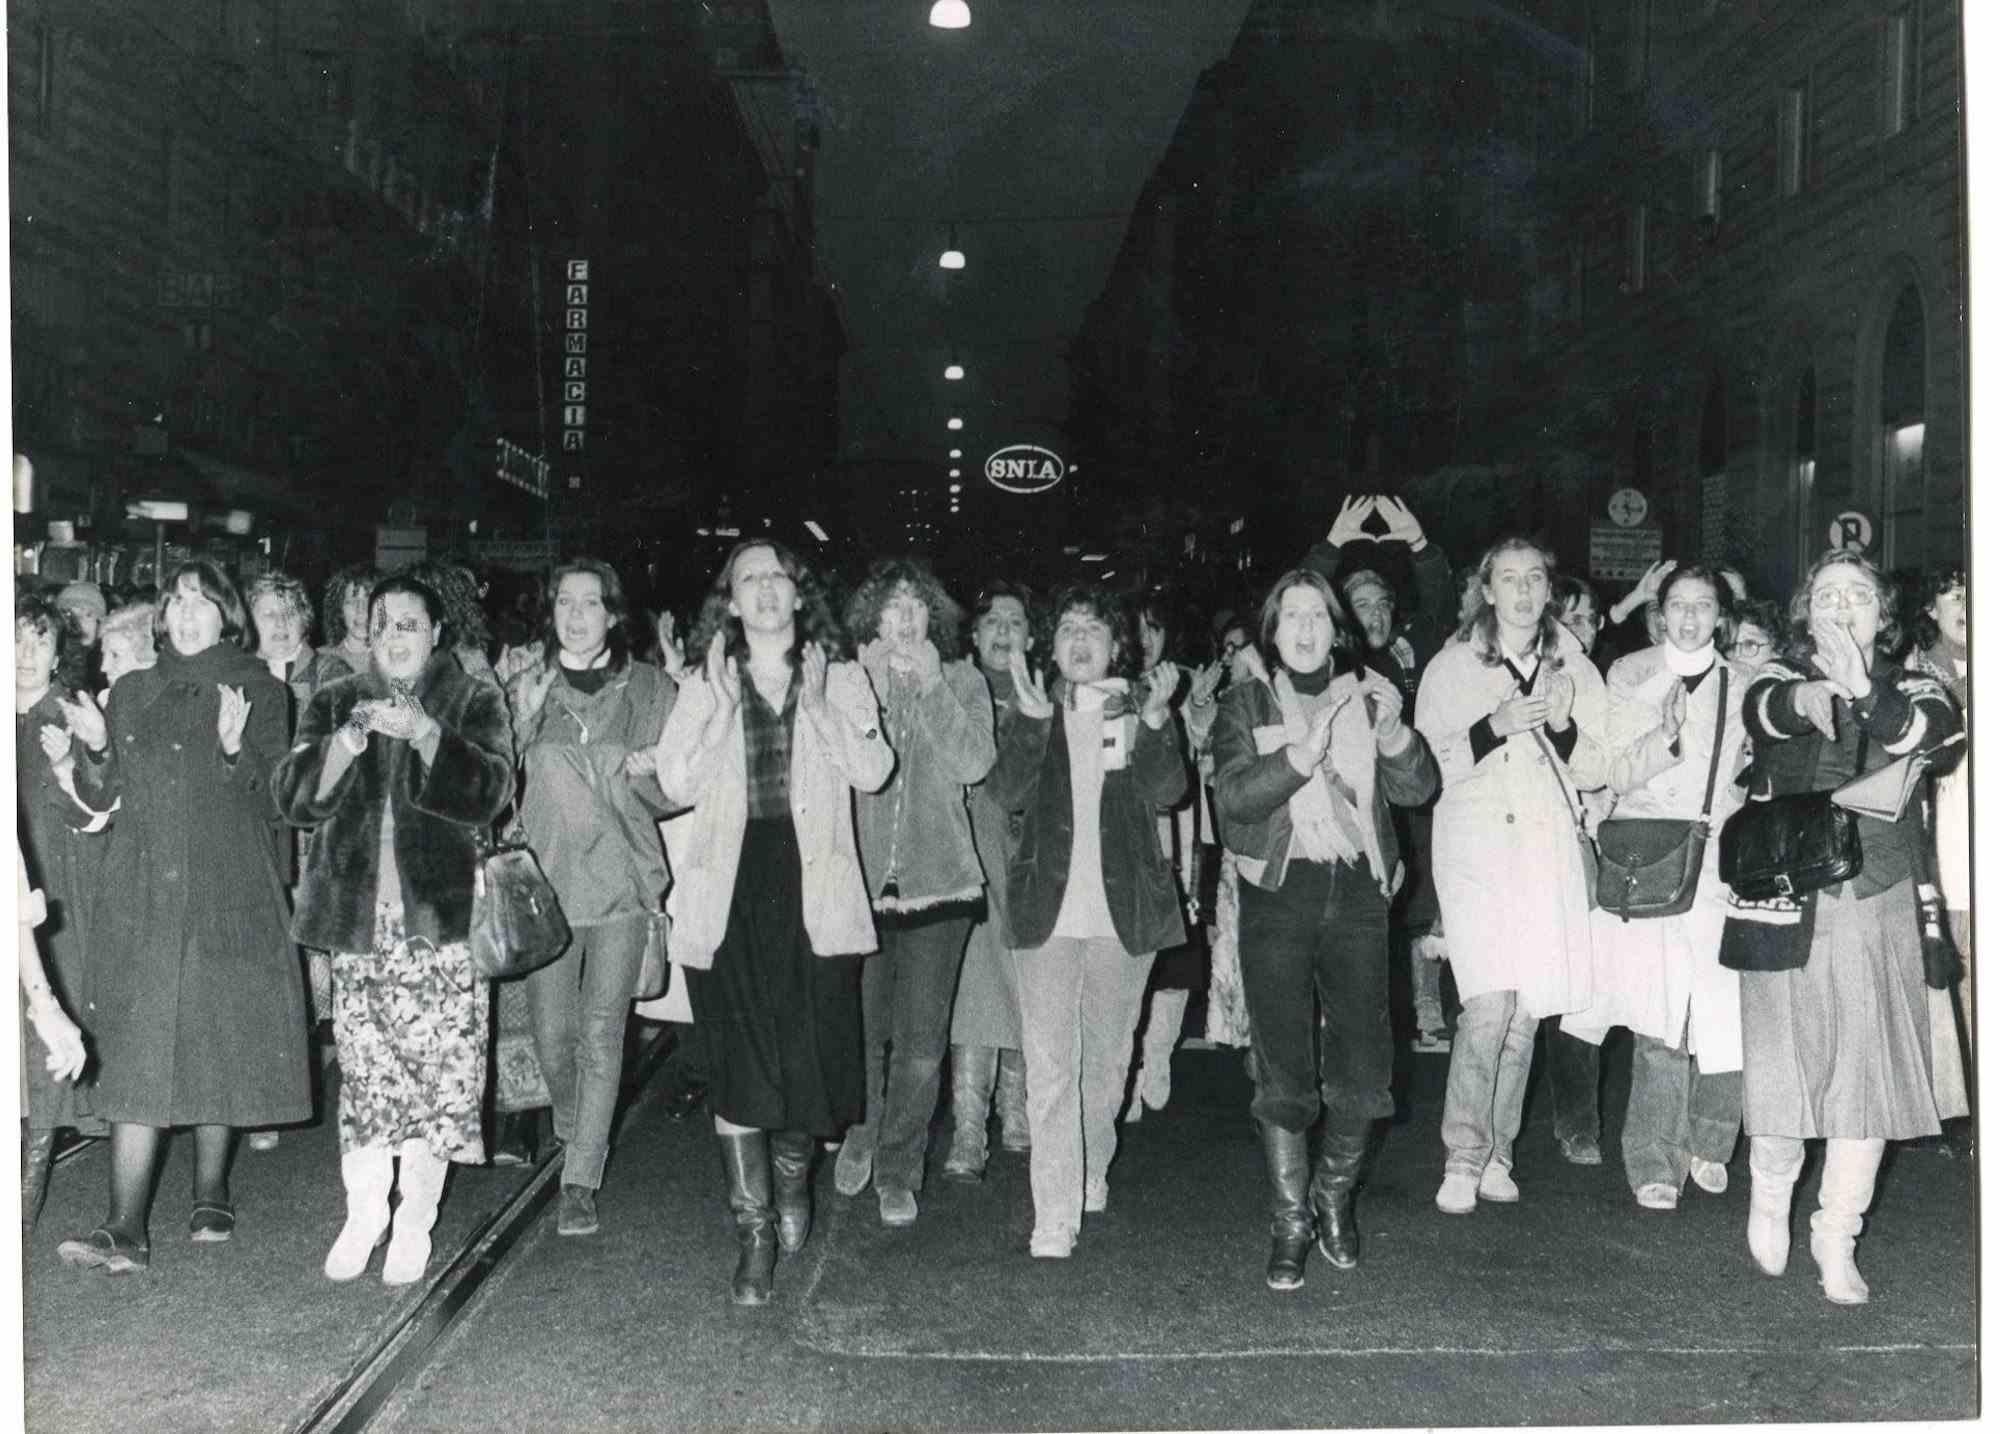 The Protest - Historische Fotografie über die feministische Bewegung - 1978